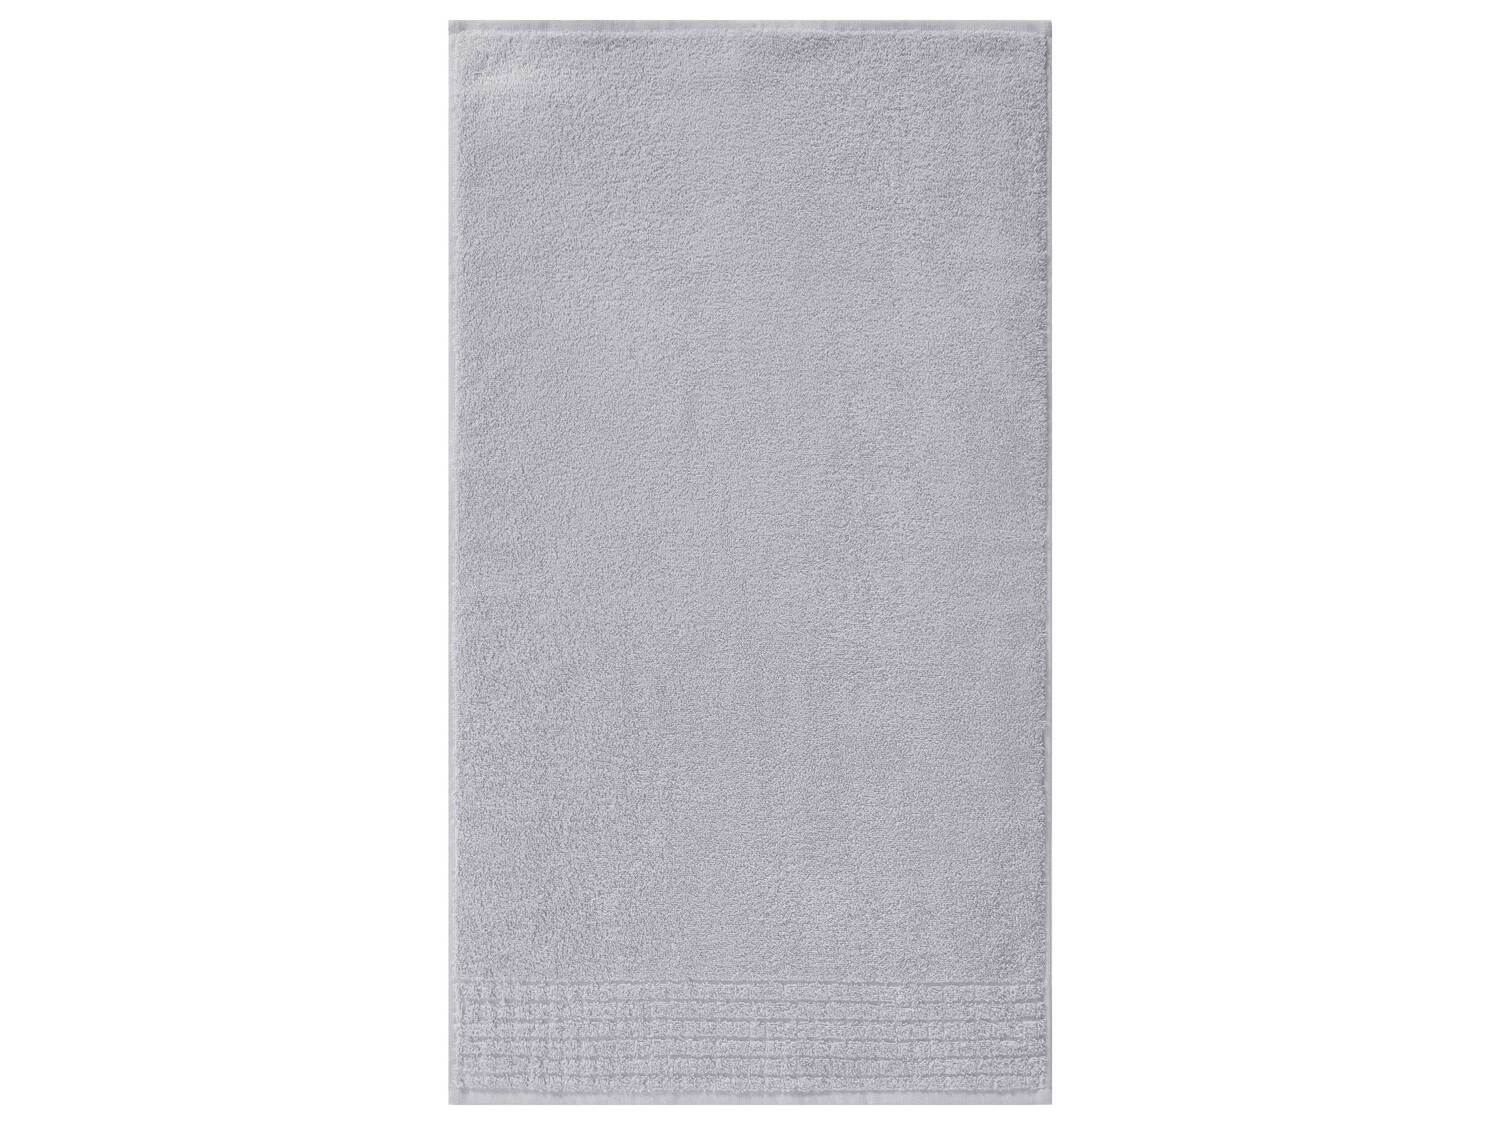 Ręcznik 50 x 90 cm Miomare, cena 9,99 PLN 
6 kolorów 
- 100% bawełny
- miękki ...